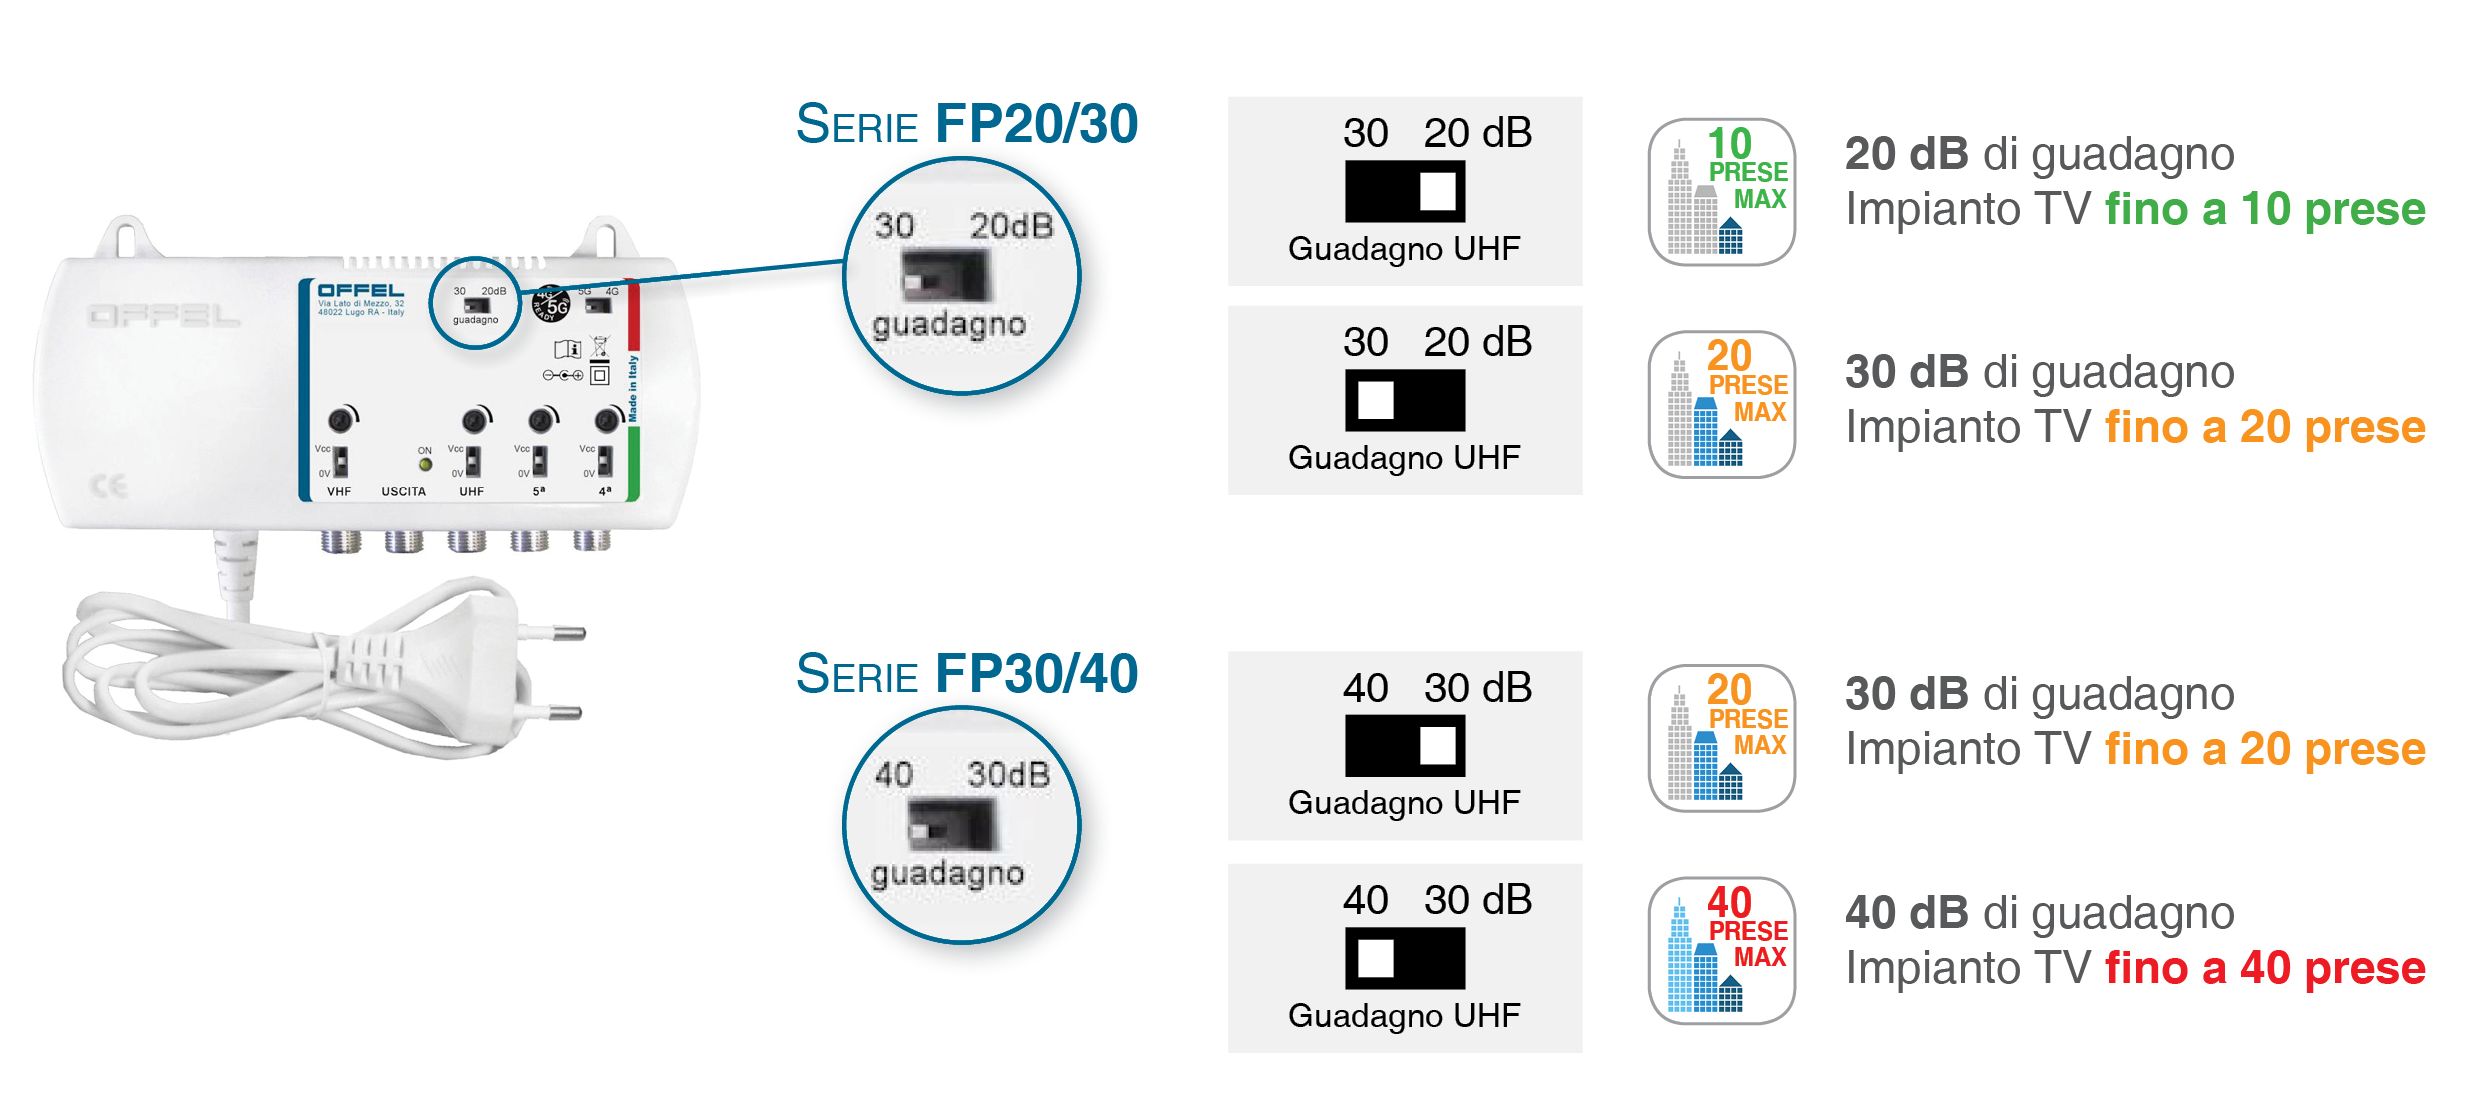 2 step di guadagno selezionabile: 20-30 dB per le serie FP20/30 e FPE20/30; 30/40 dB per le serie FP30/40 e FPE30/40